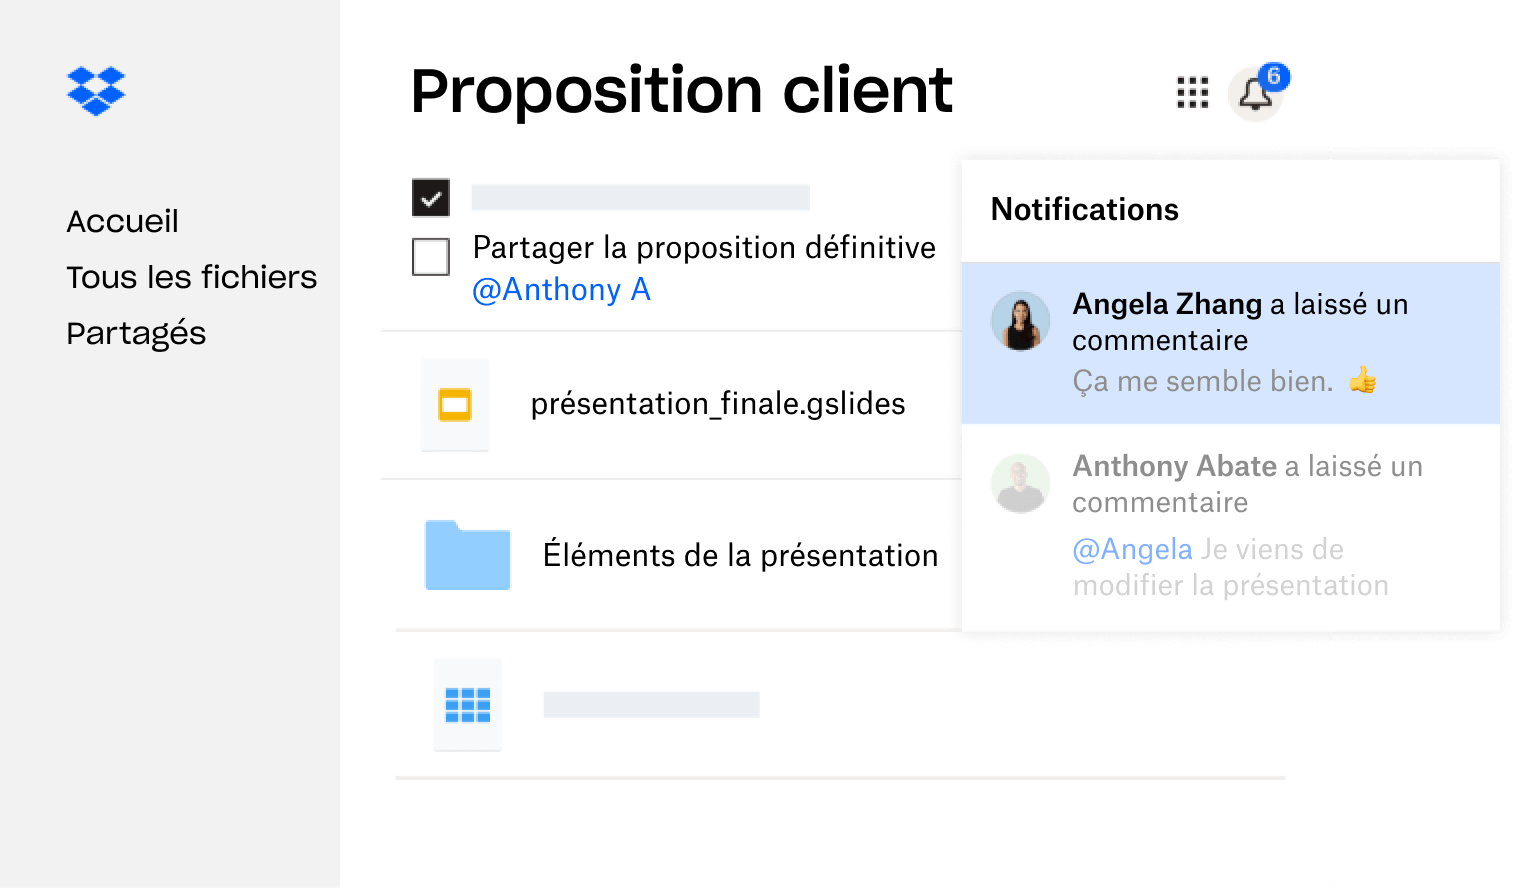 Proposition client créée dans Dropbox et partagée avec plusieurs utilisateurs qui ont laissé des commentaires